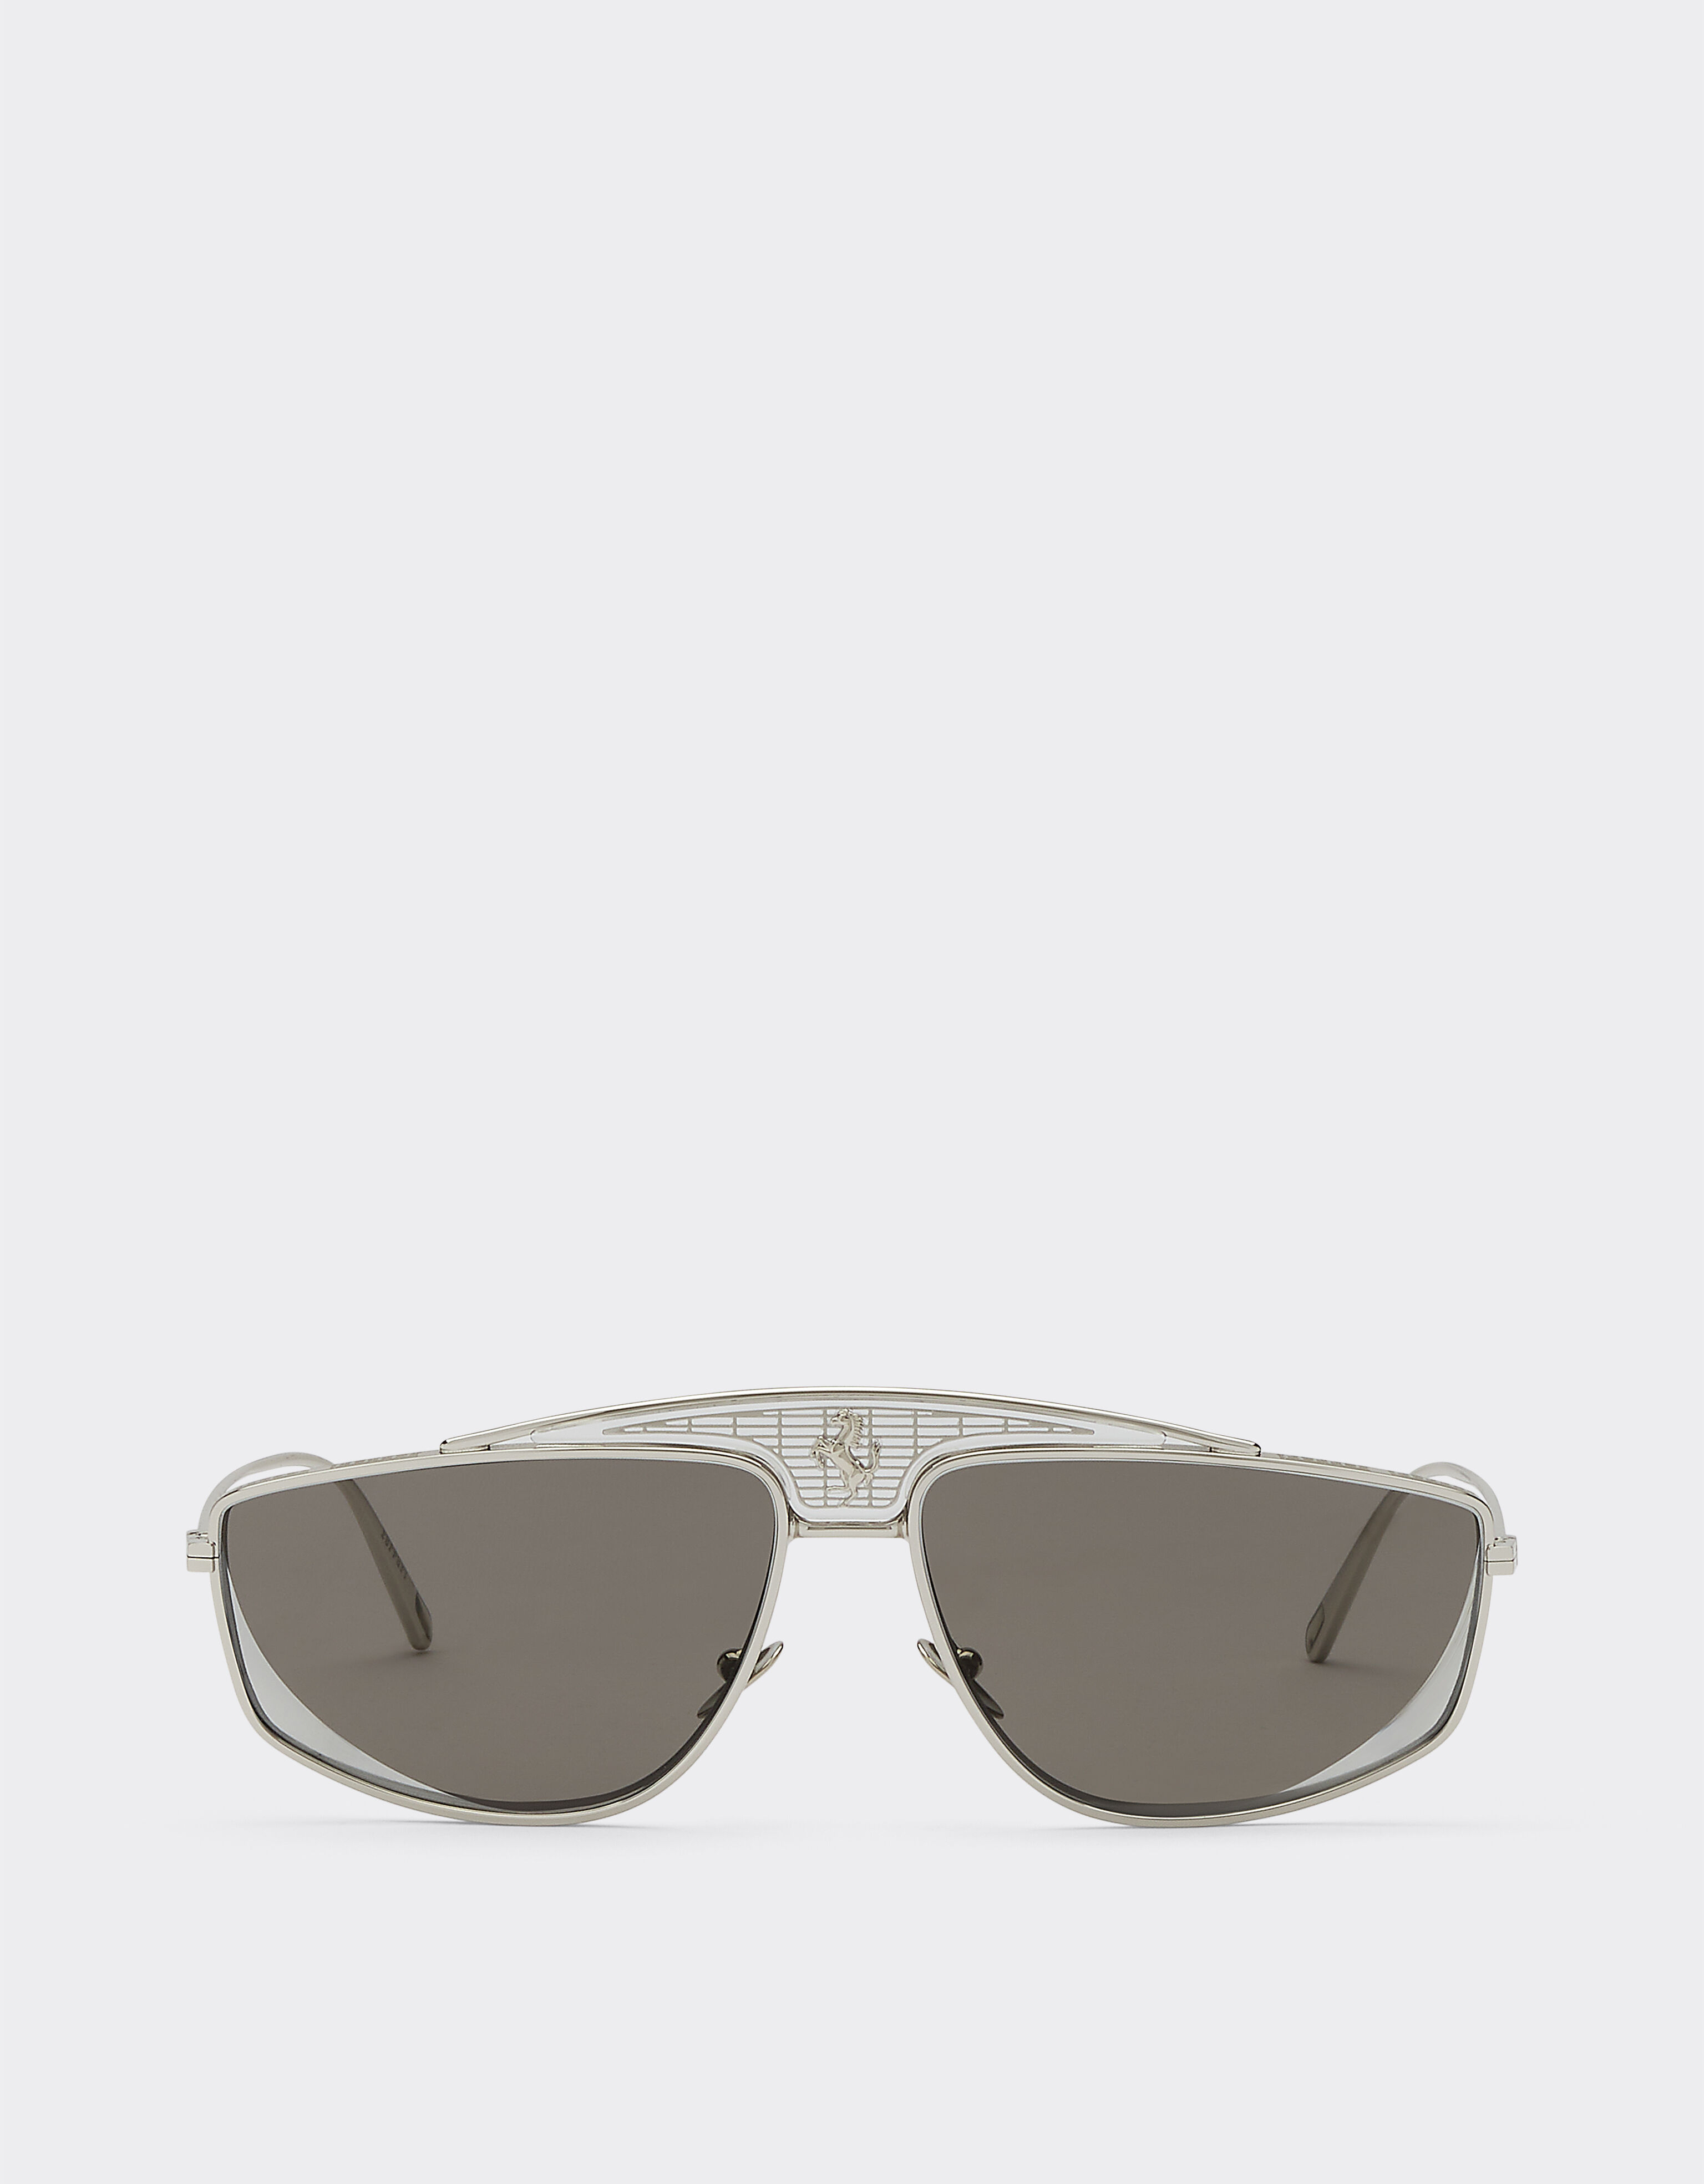 Ferrari Ferrari-Sonnenbrille mit silberfarben verspiegelten Gläsern Gold F0411f